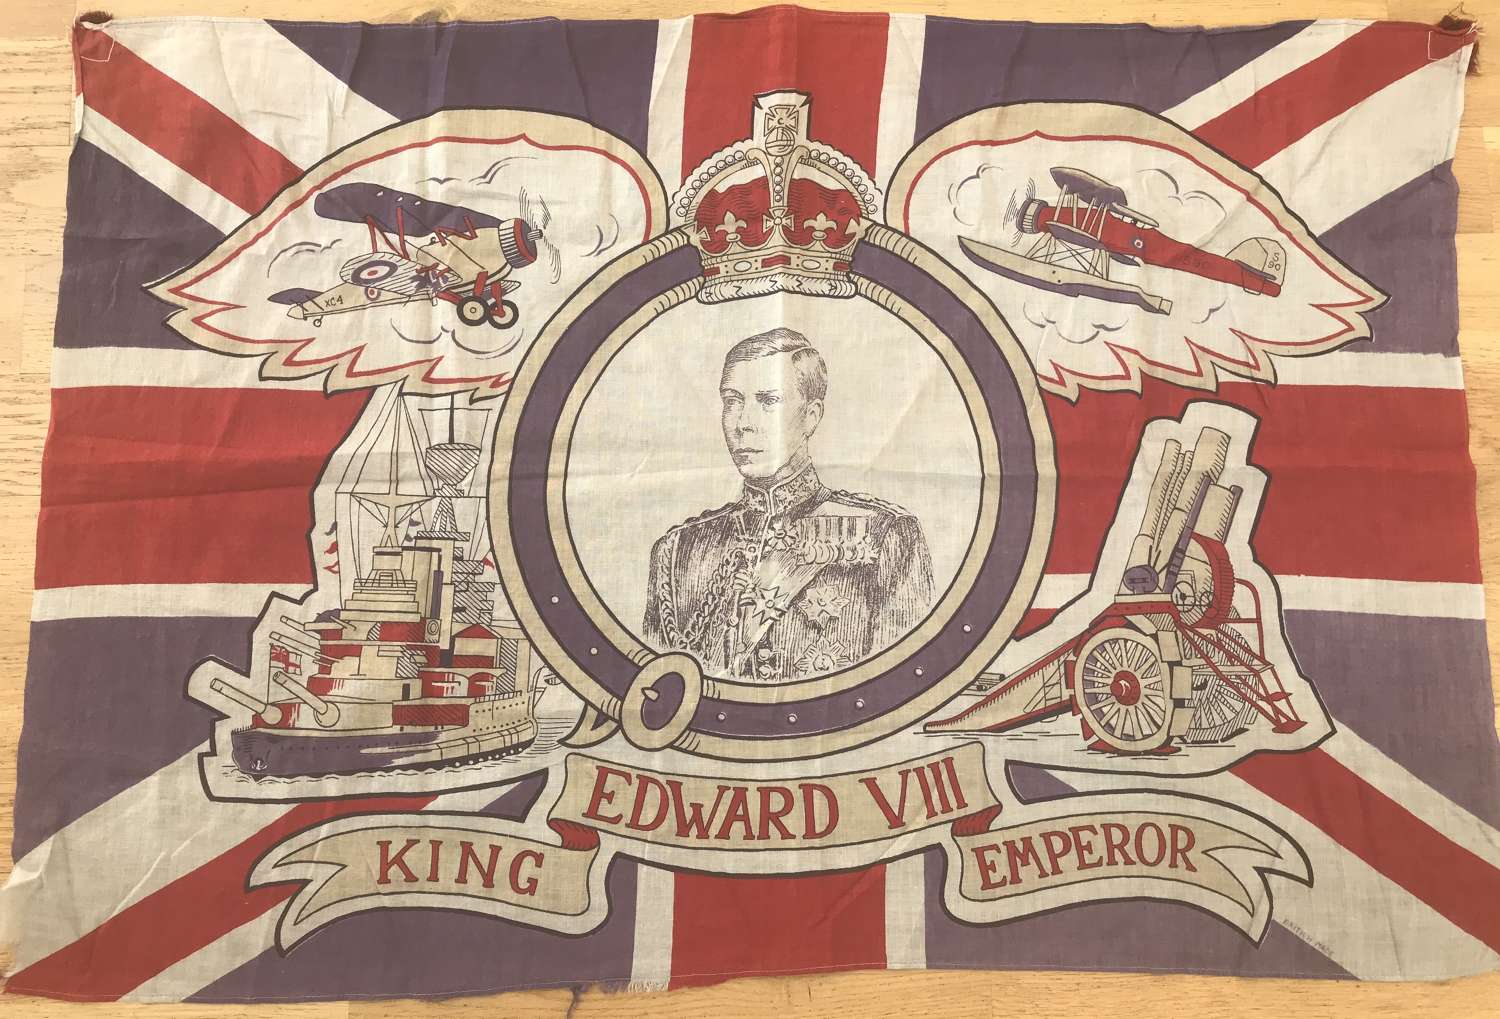 Edward VIII commemoration or coronation flag 1936